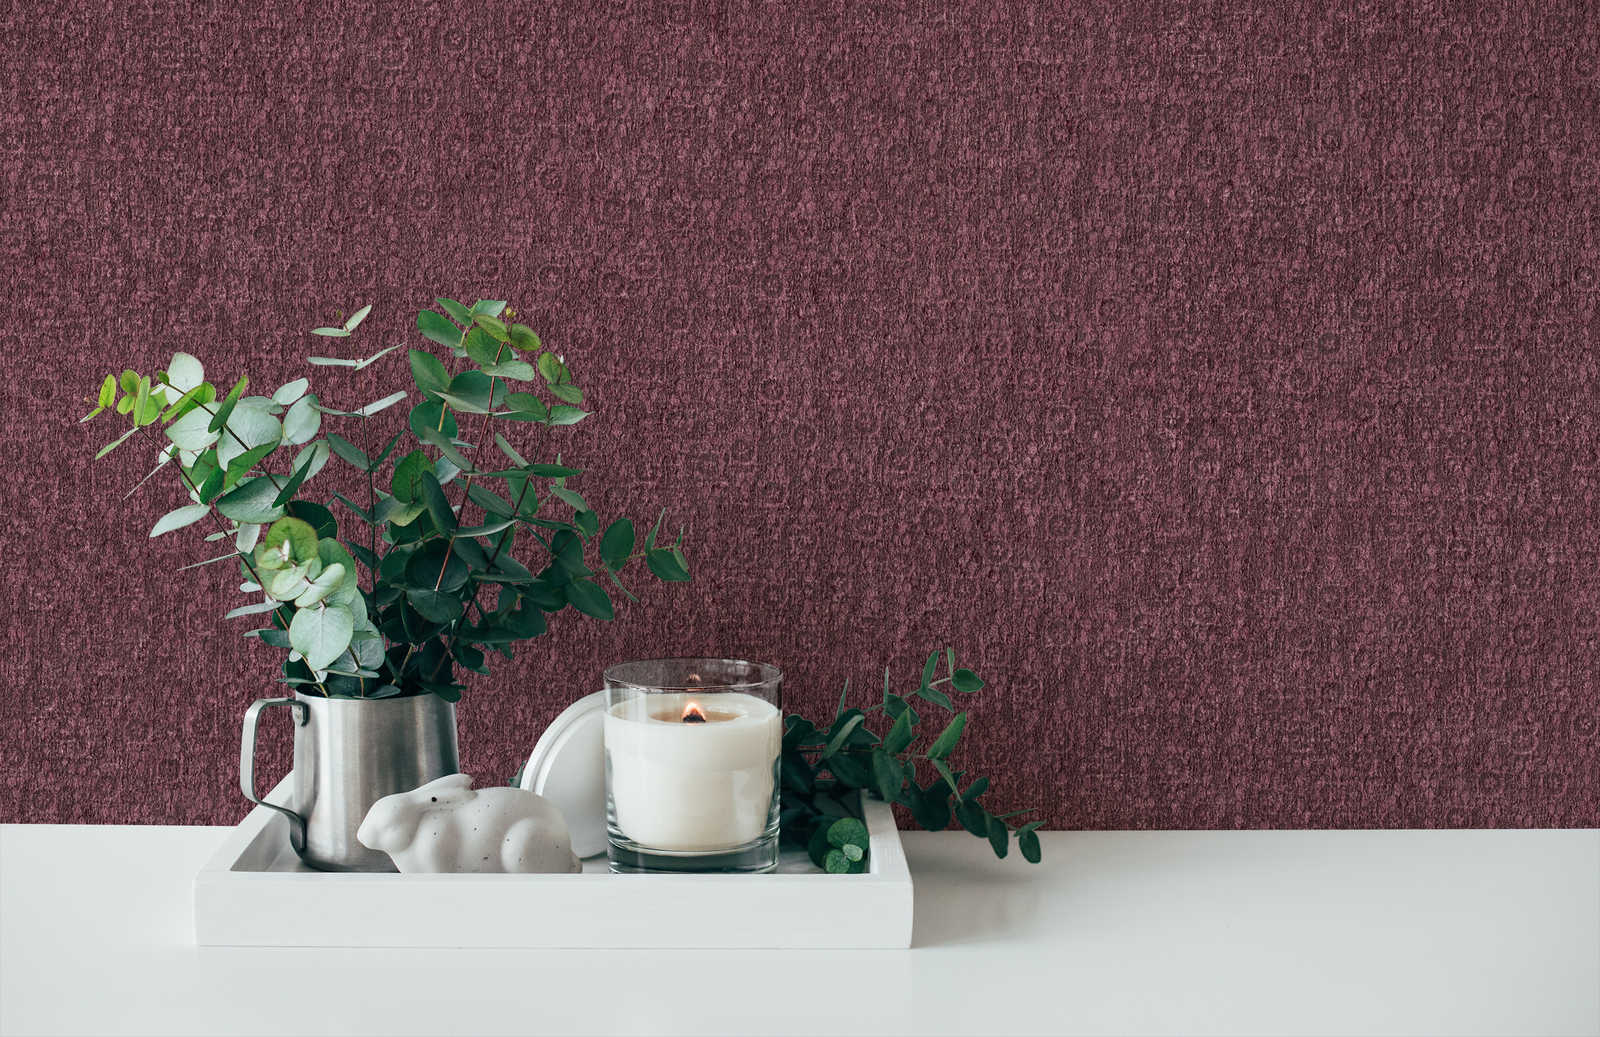             Dark red wallpaper with textured pattern & metallic effect
        